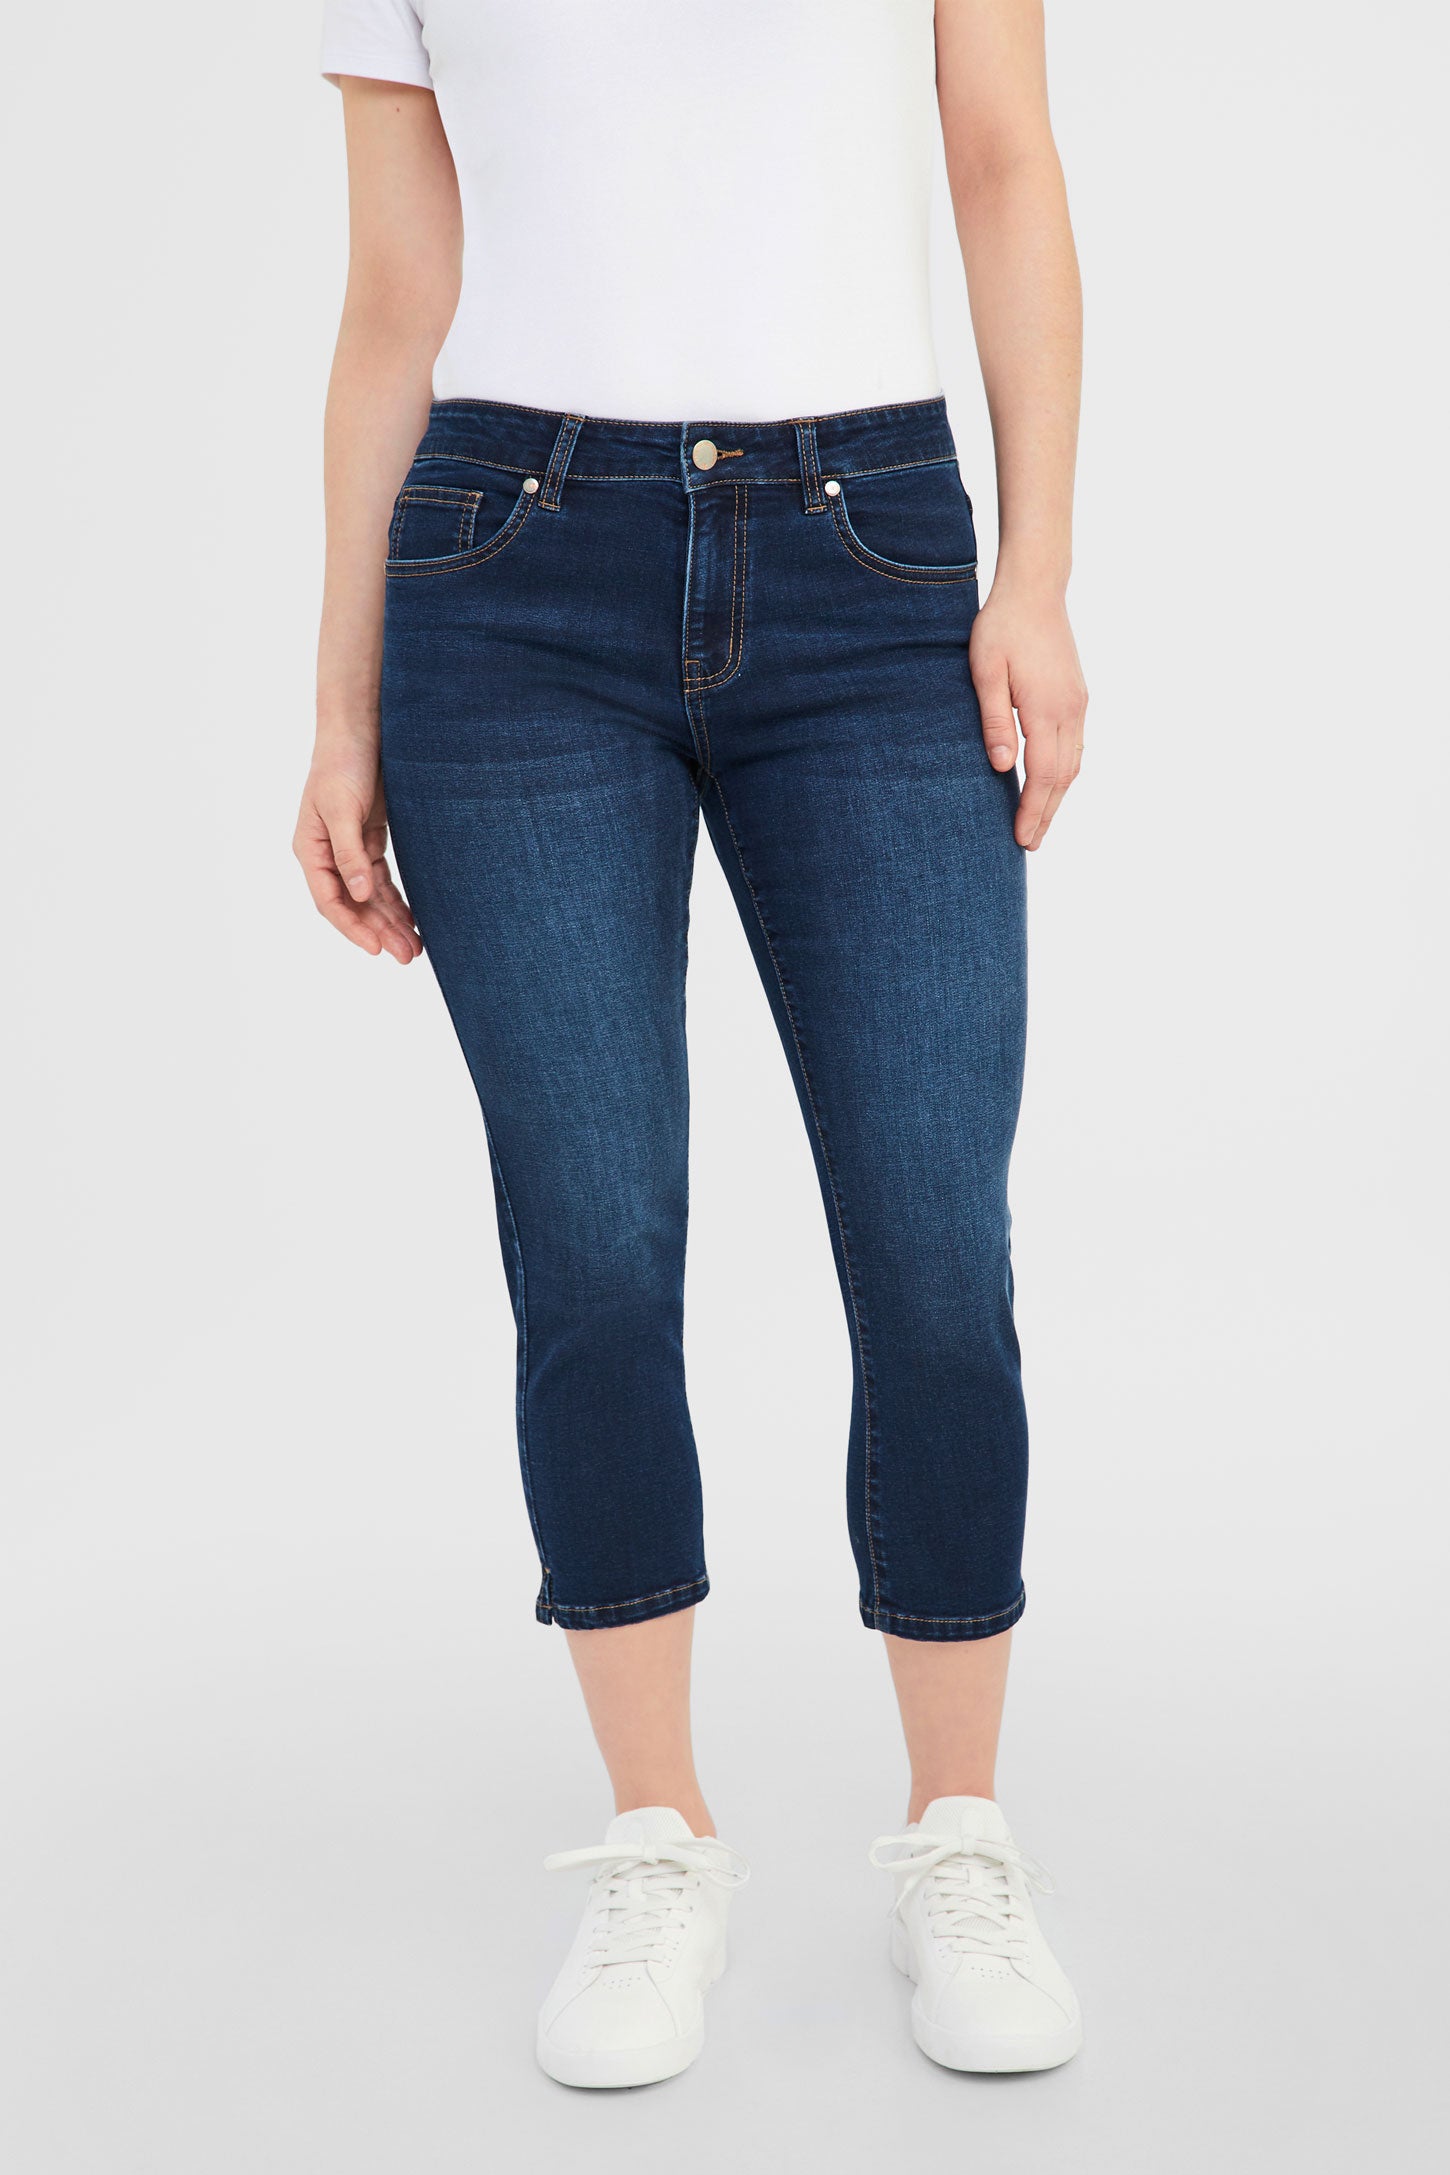 Jeans pour femme, à shopper en ligne à prix minis I C&A